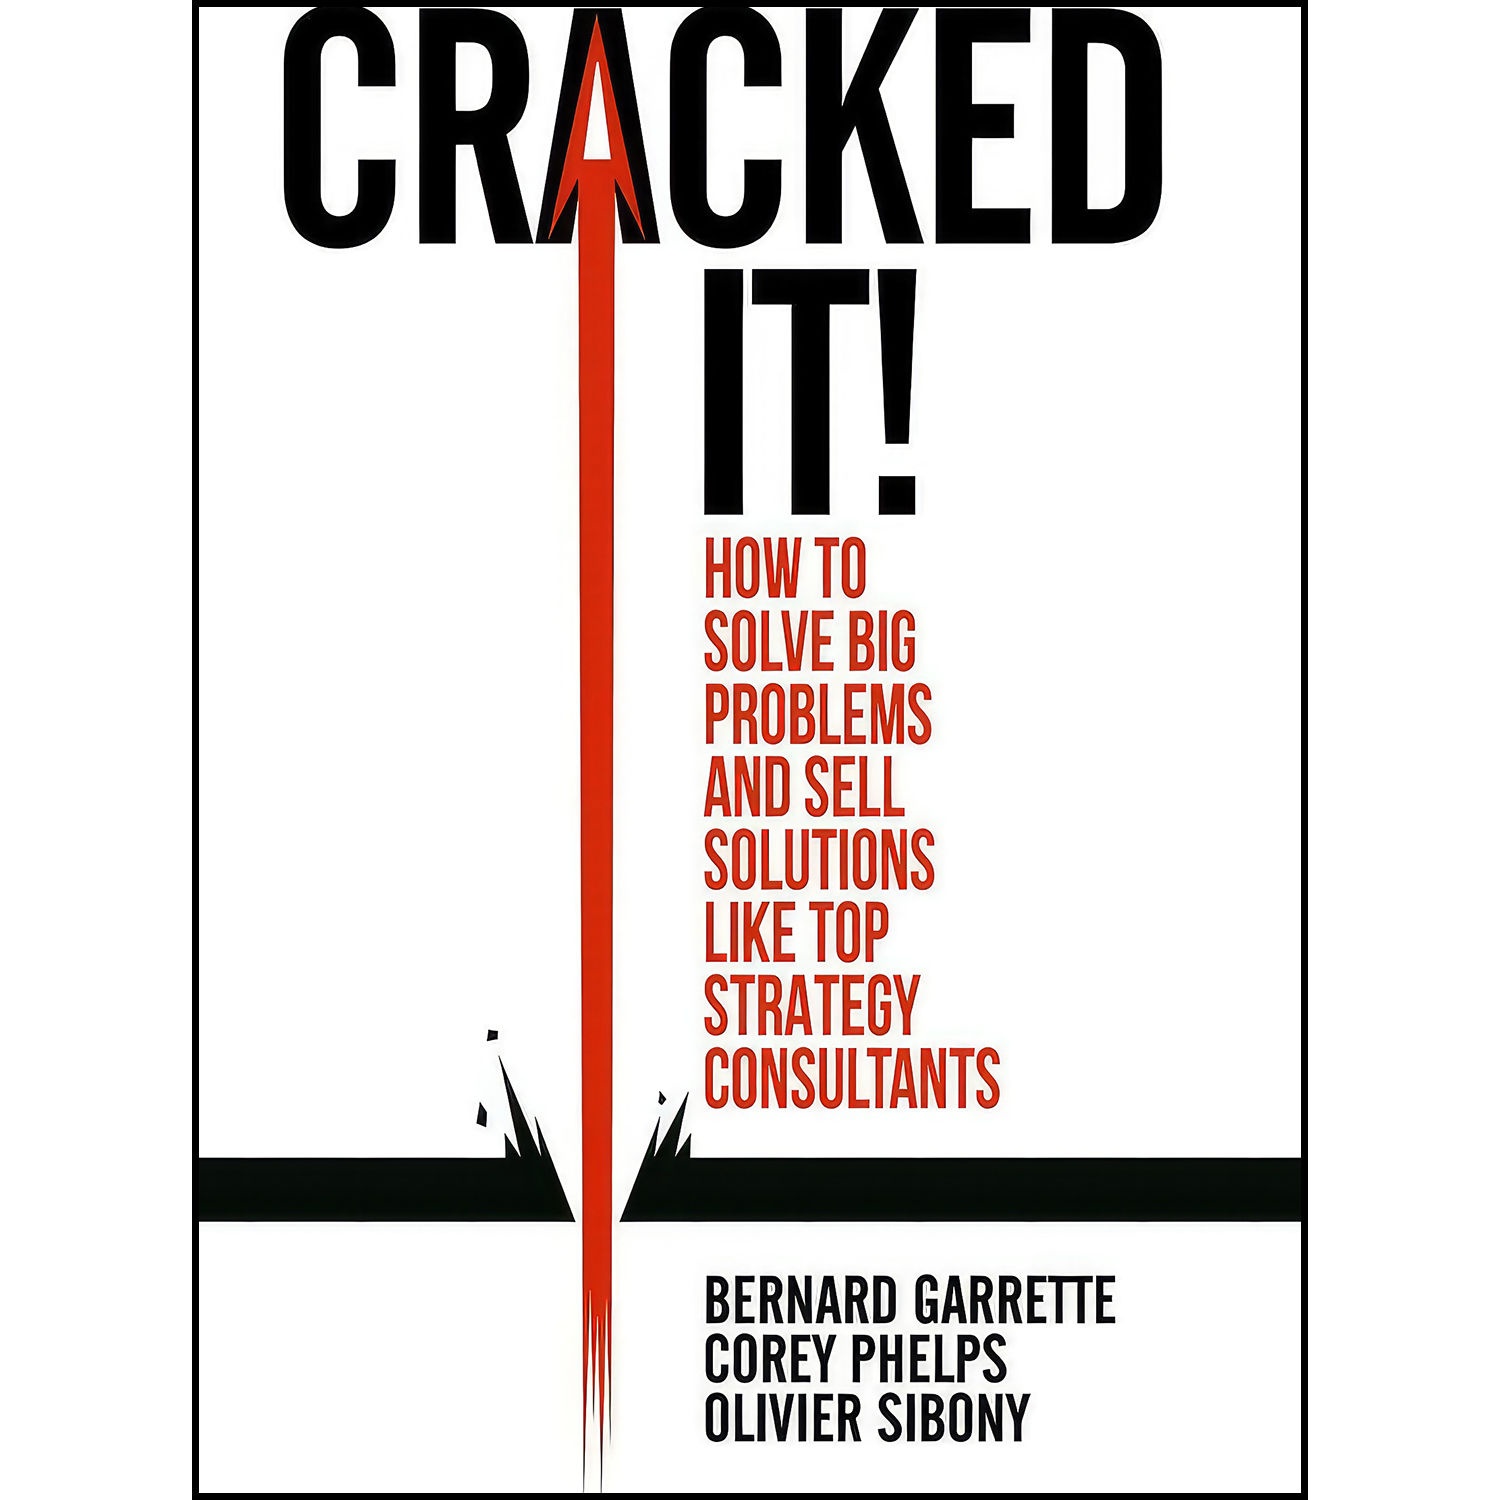 کتاب Cracked it! اثر جمعي از نويسندگان انتشارات Springer